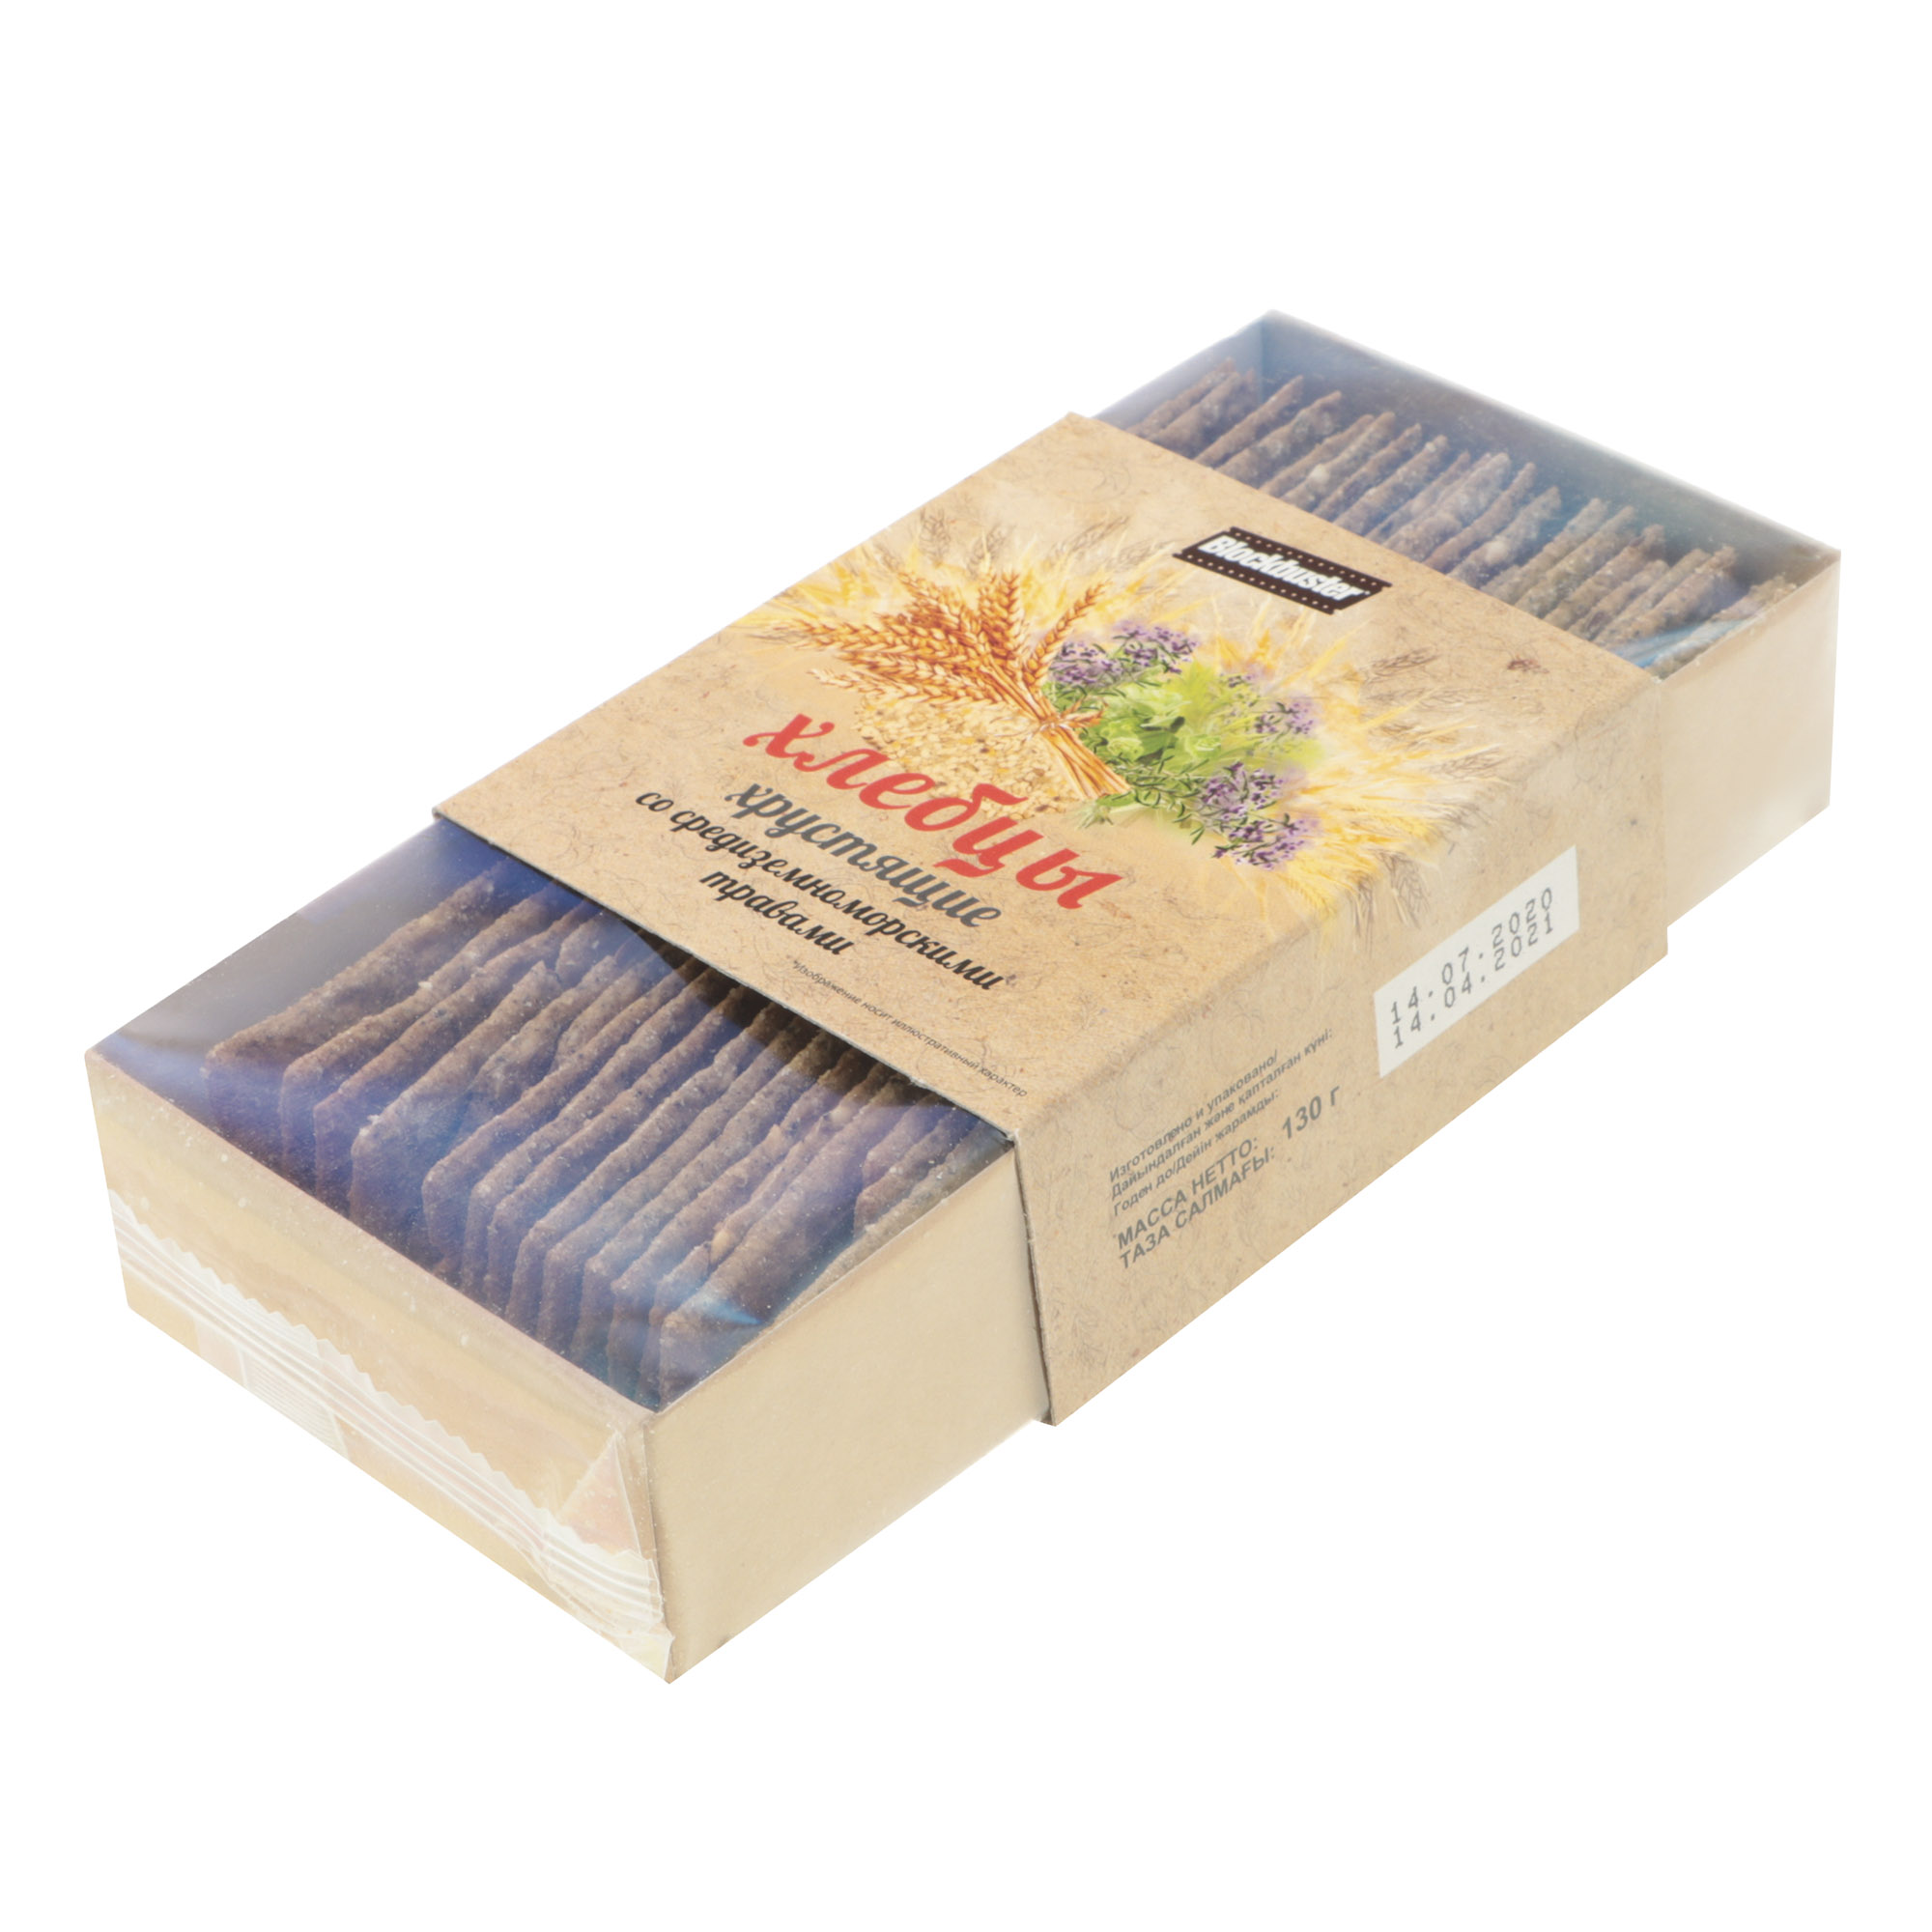 Хлебцы Blockbuster средиземноморские травы, 130 г хлебцы ржаные цельнозерновые wasa 275 гр